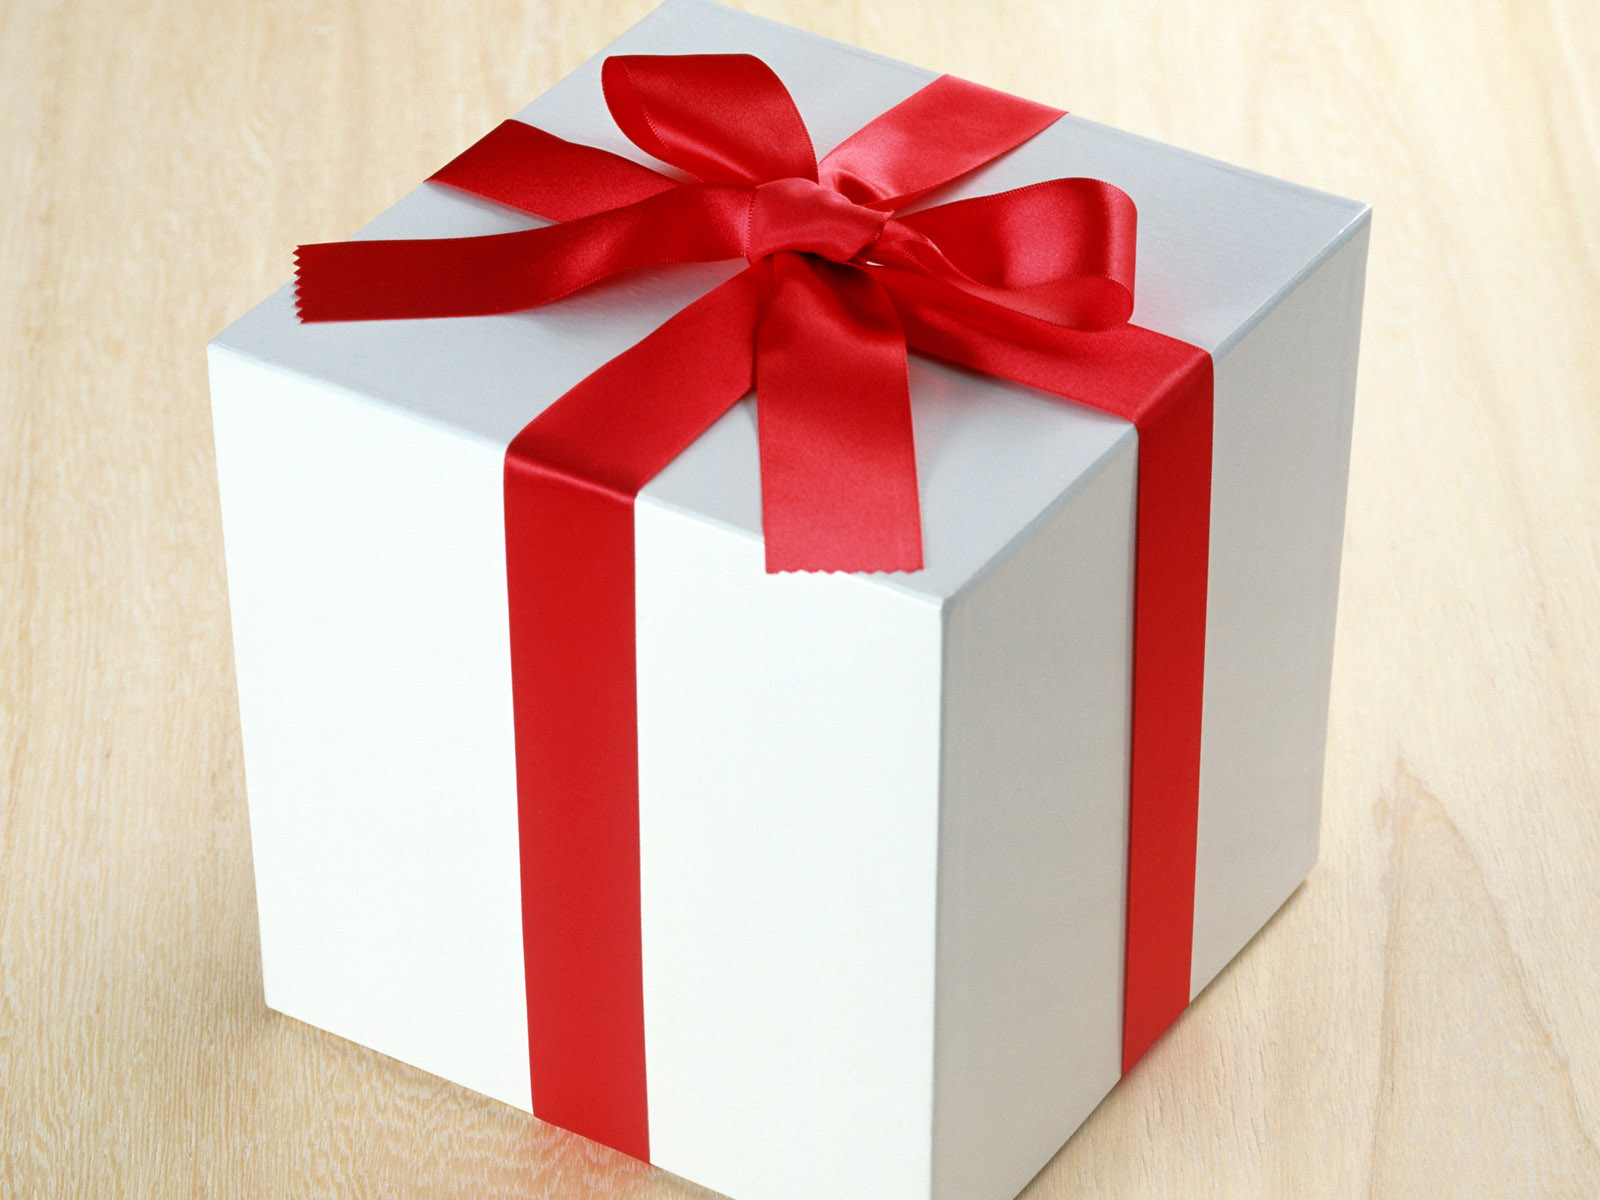 壁纸1600x1200礼物包装 2 8壁纸 礼物包装壁纸 礼物包装图片 礼物包装素材 节日壁纸 节日图库 节日图片素材桌面壁纸